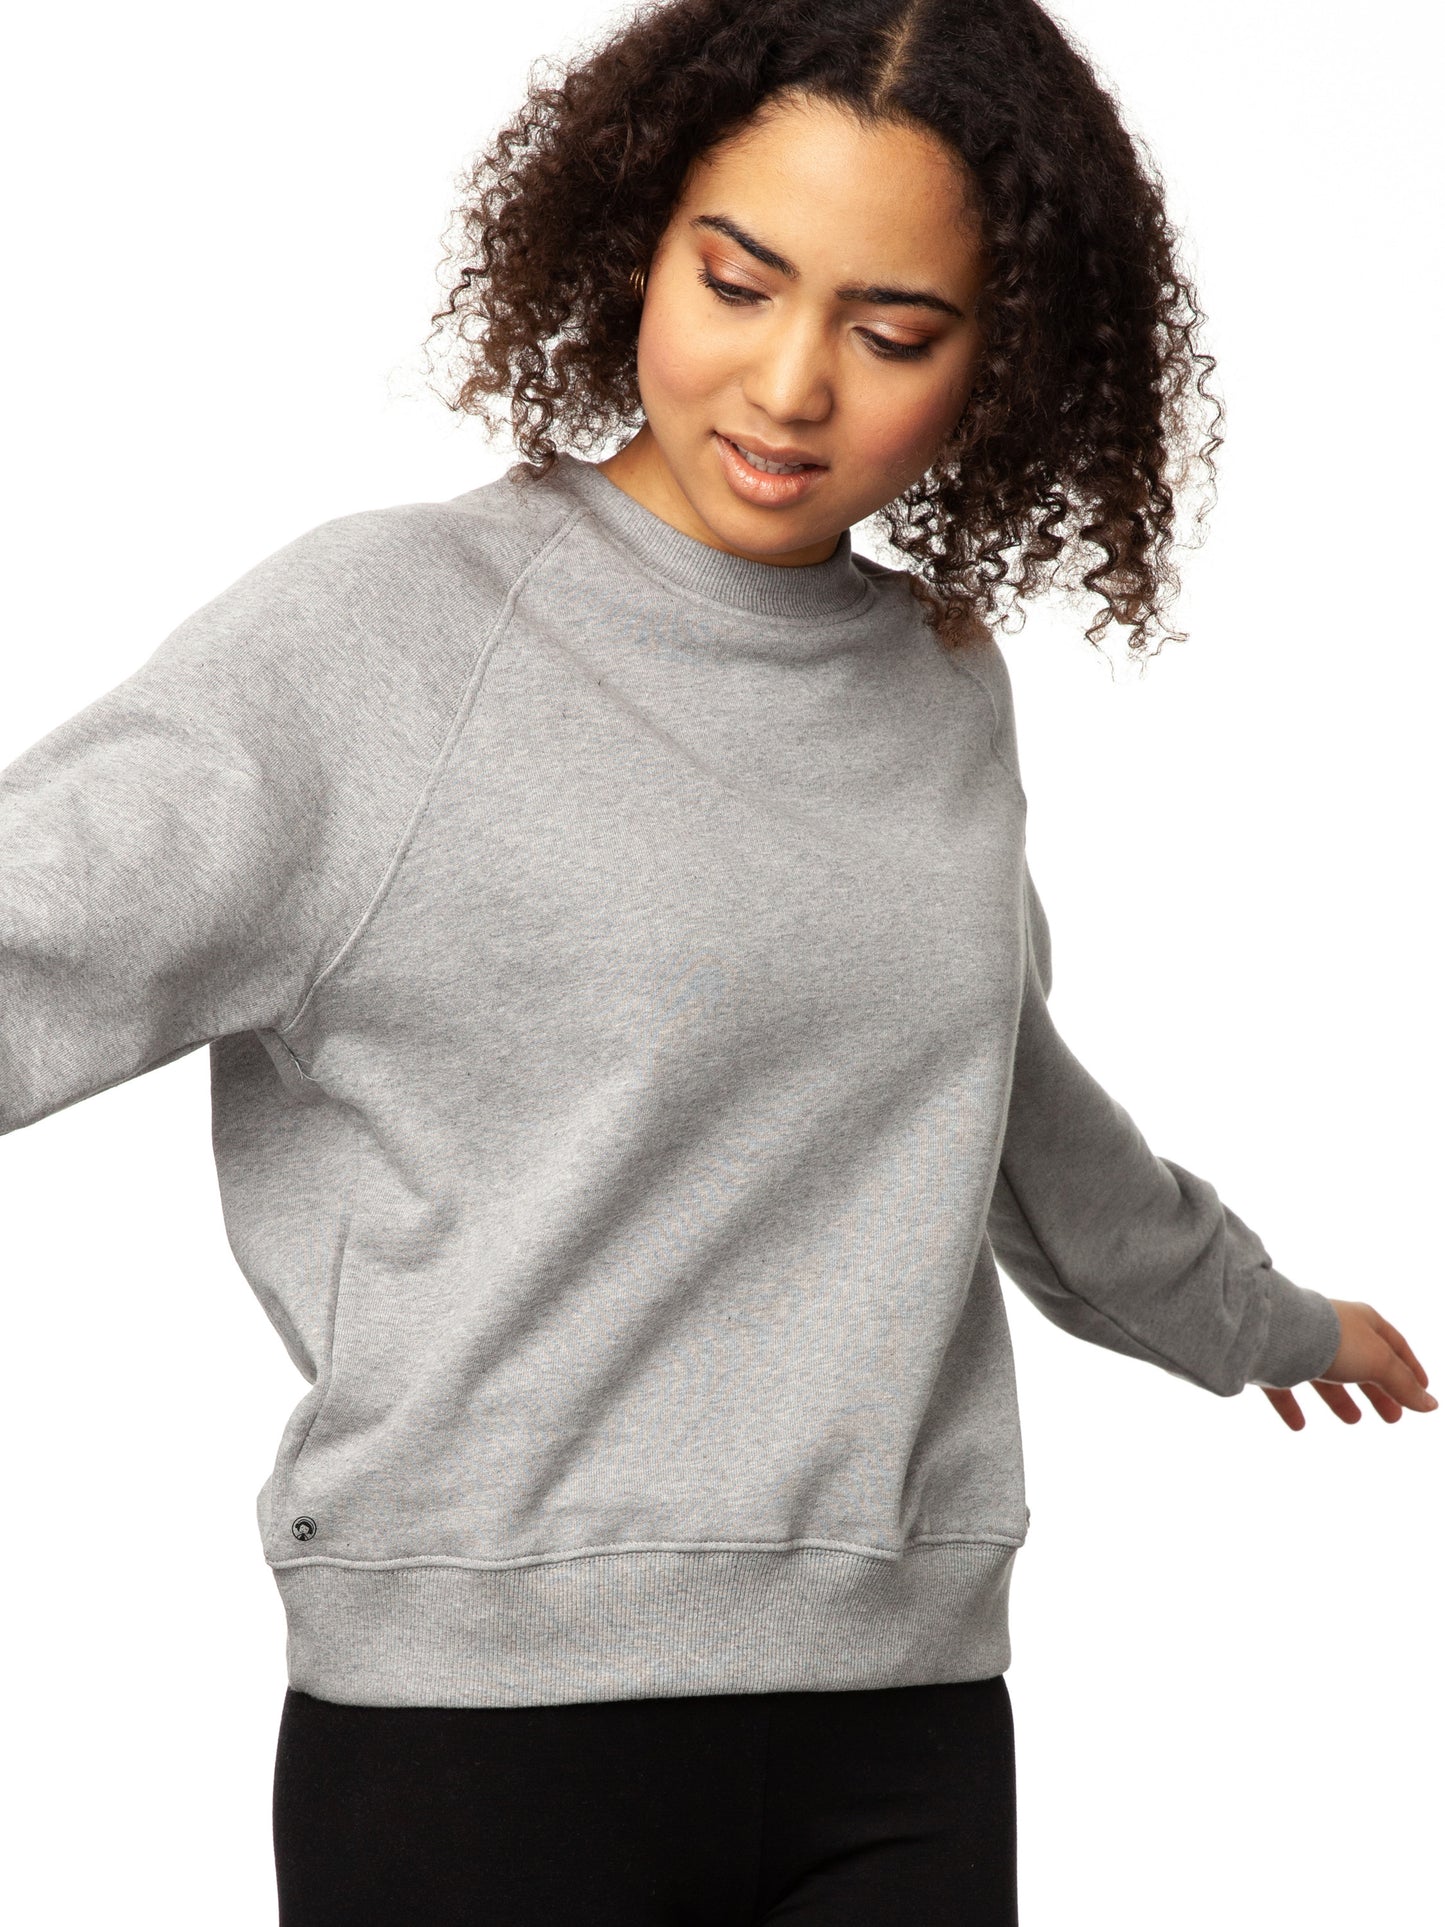 Raglan Sweater grey melange